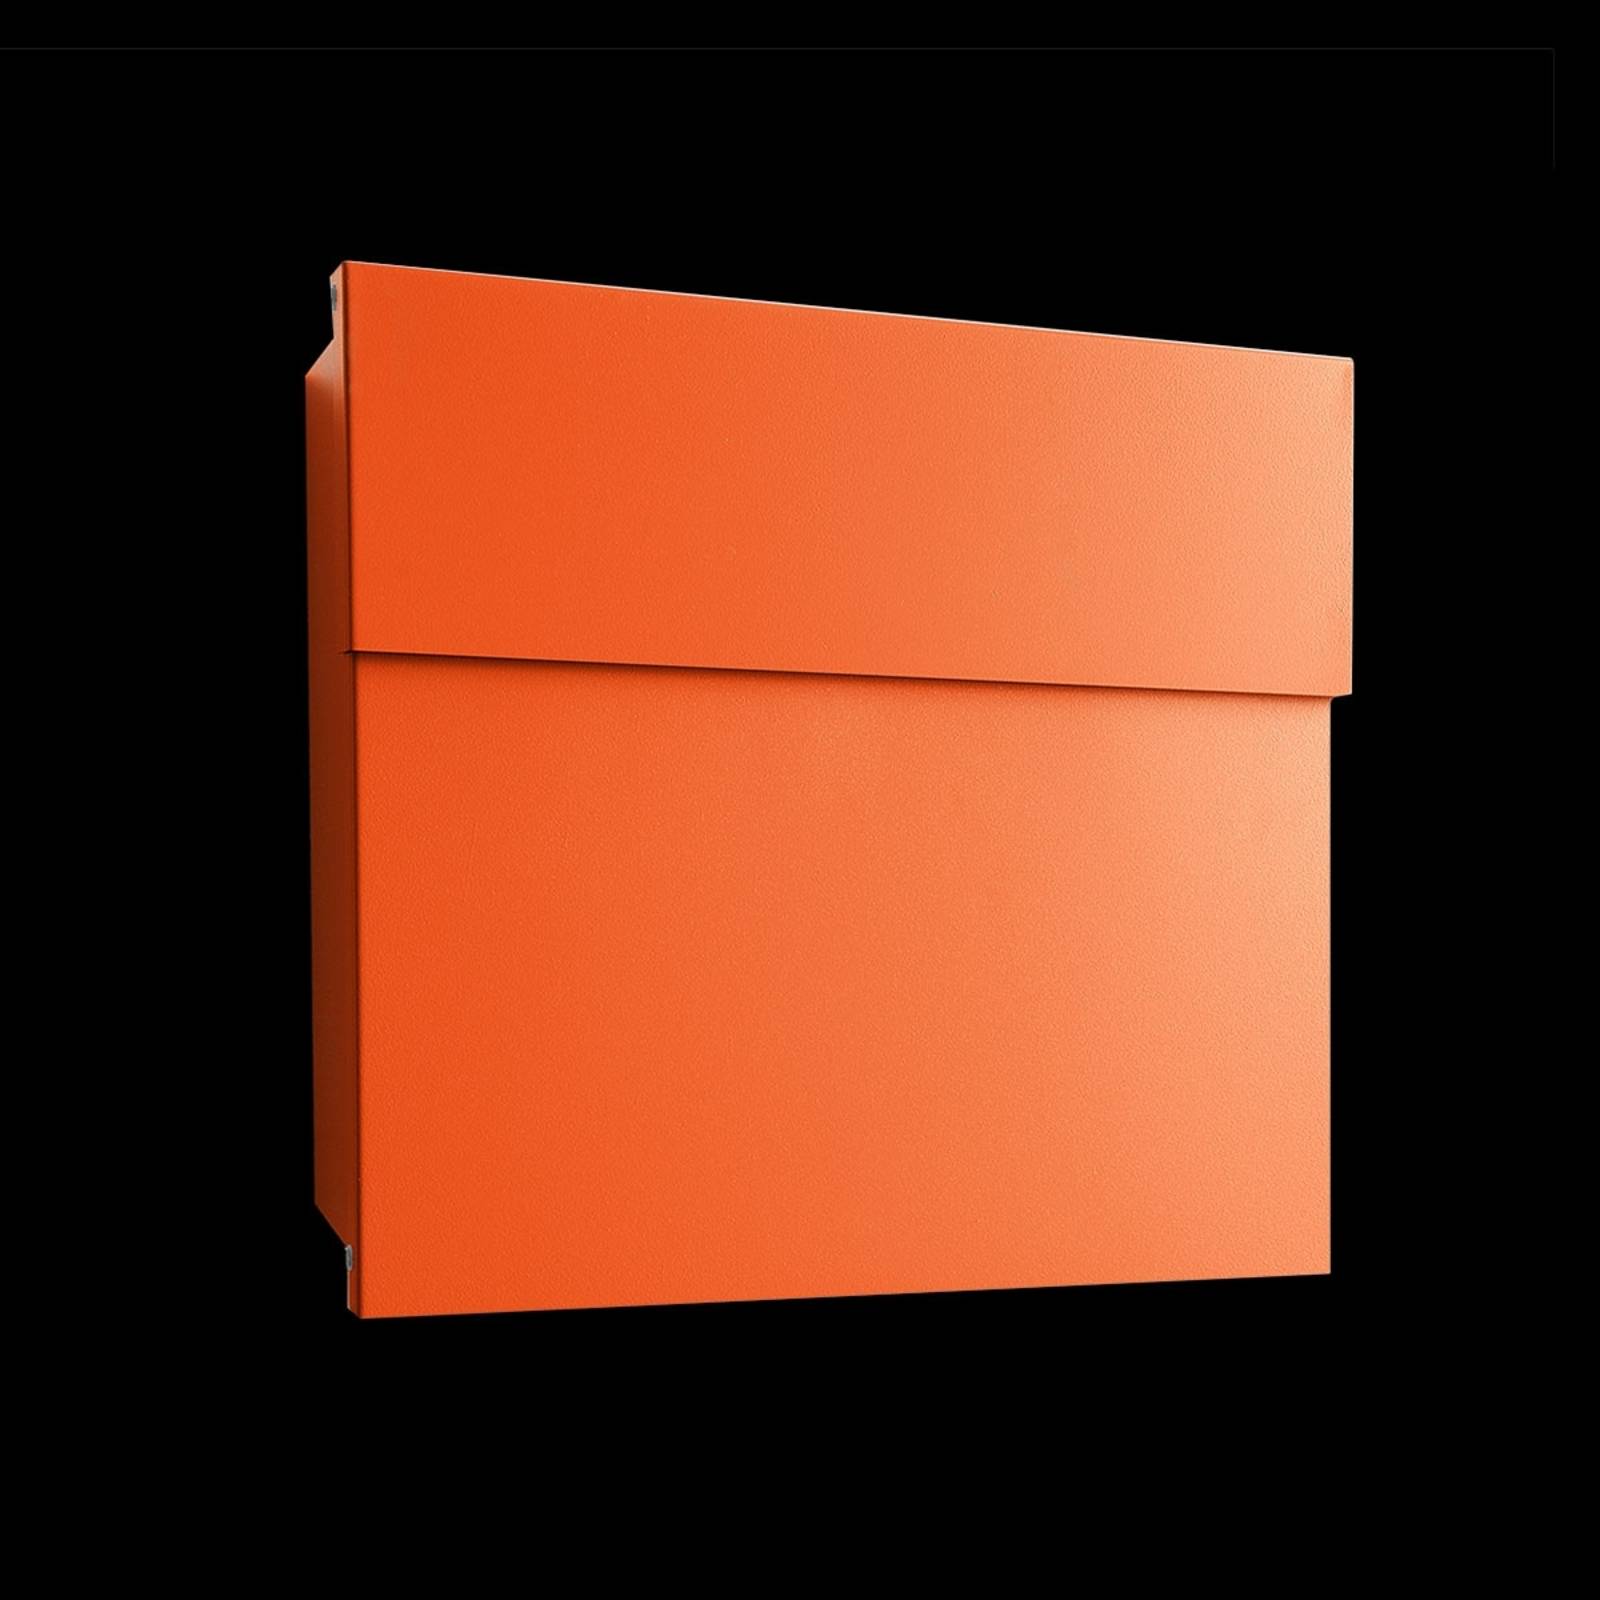 Design-Briefkasten Letterman IV orange von Absolut/ Radius